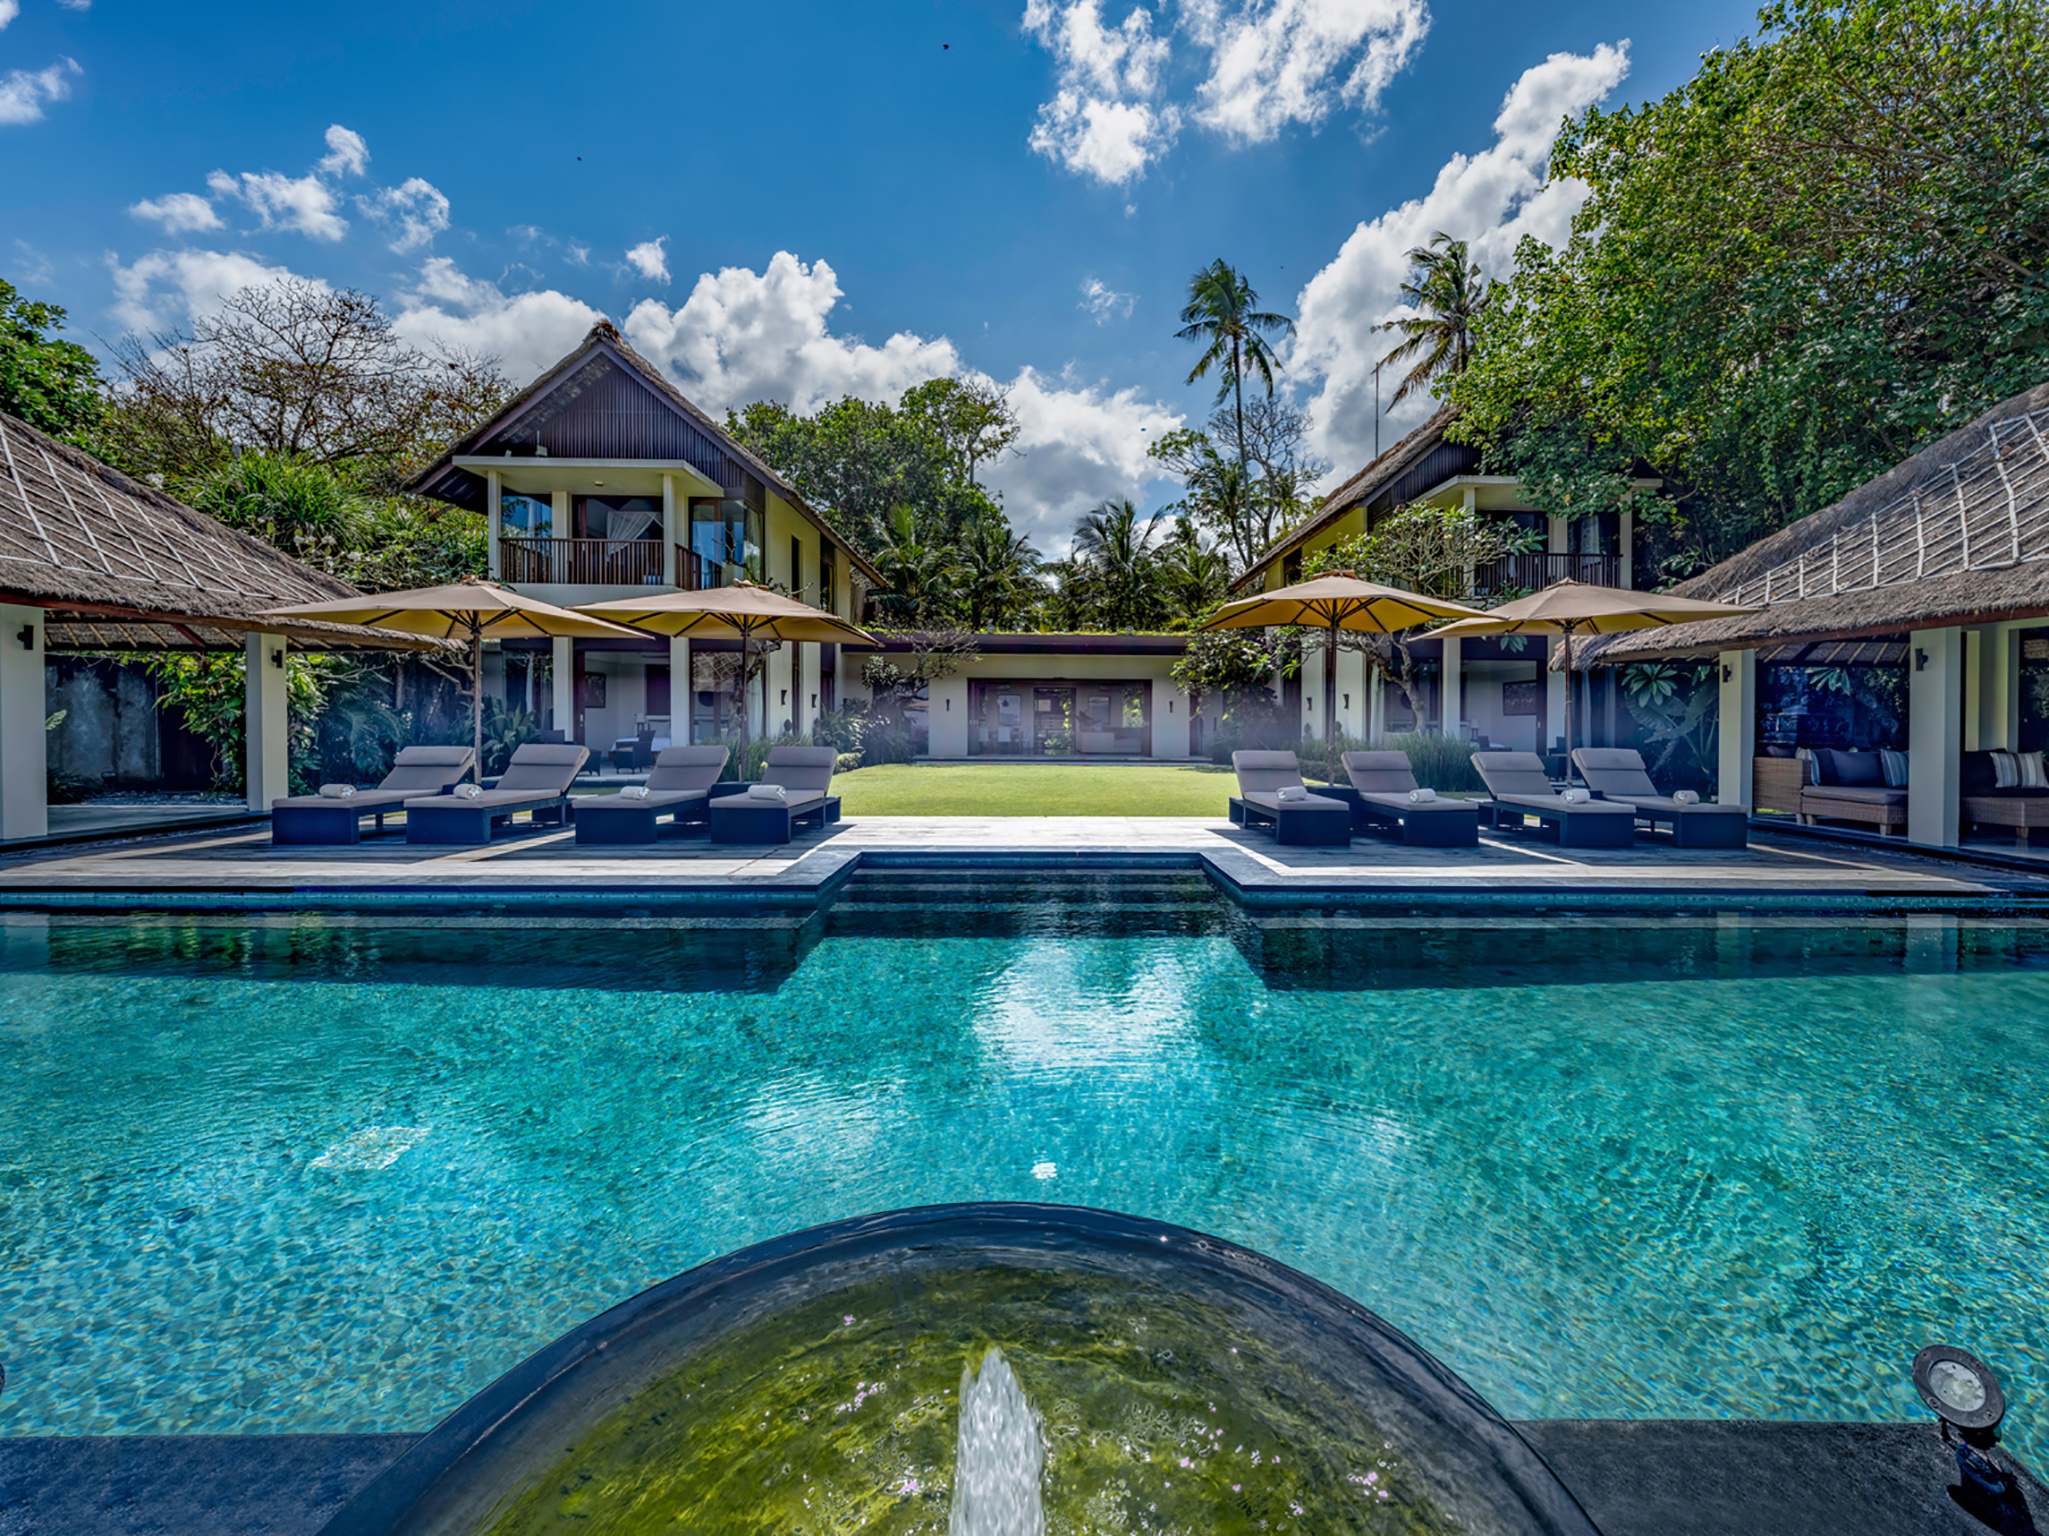 Seseh Beach Villa I - Villa facade and pool - Seseh Beach Villa I, Seseh-Tanah Lot, Bali